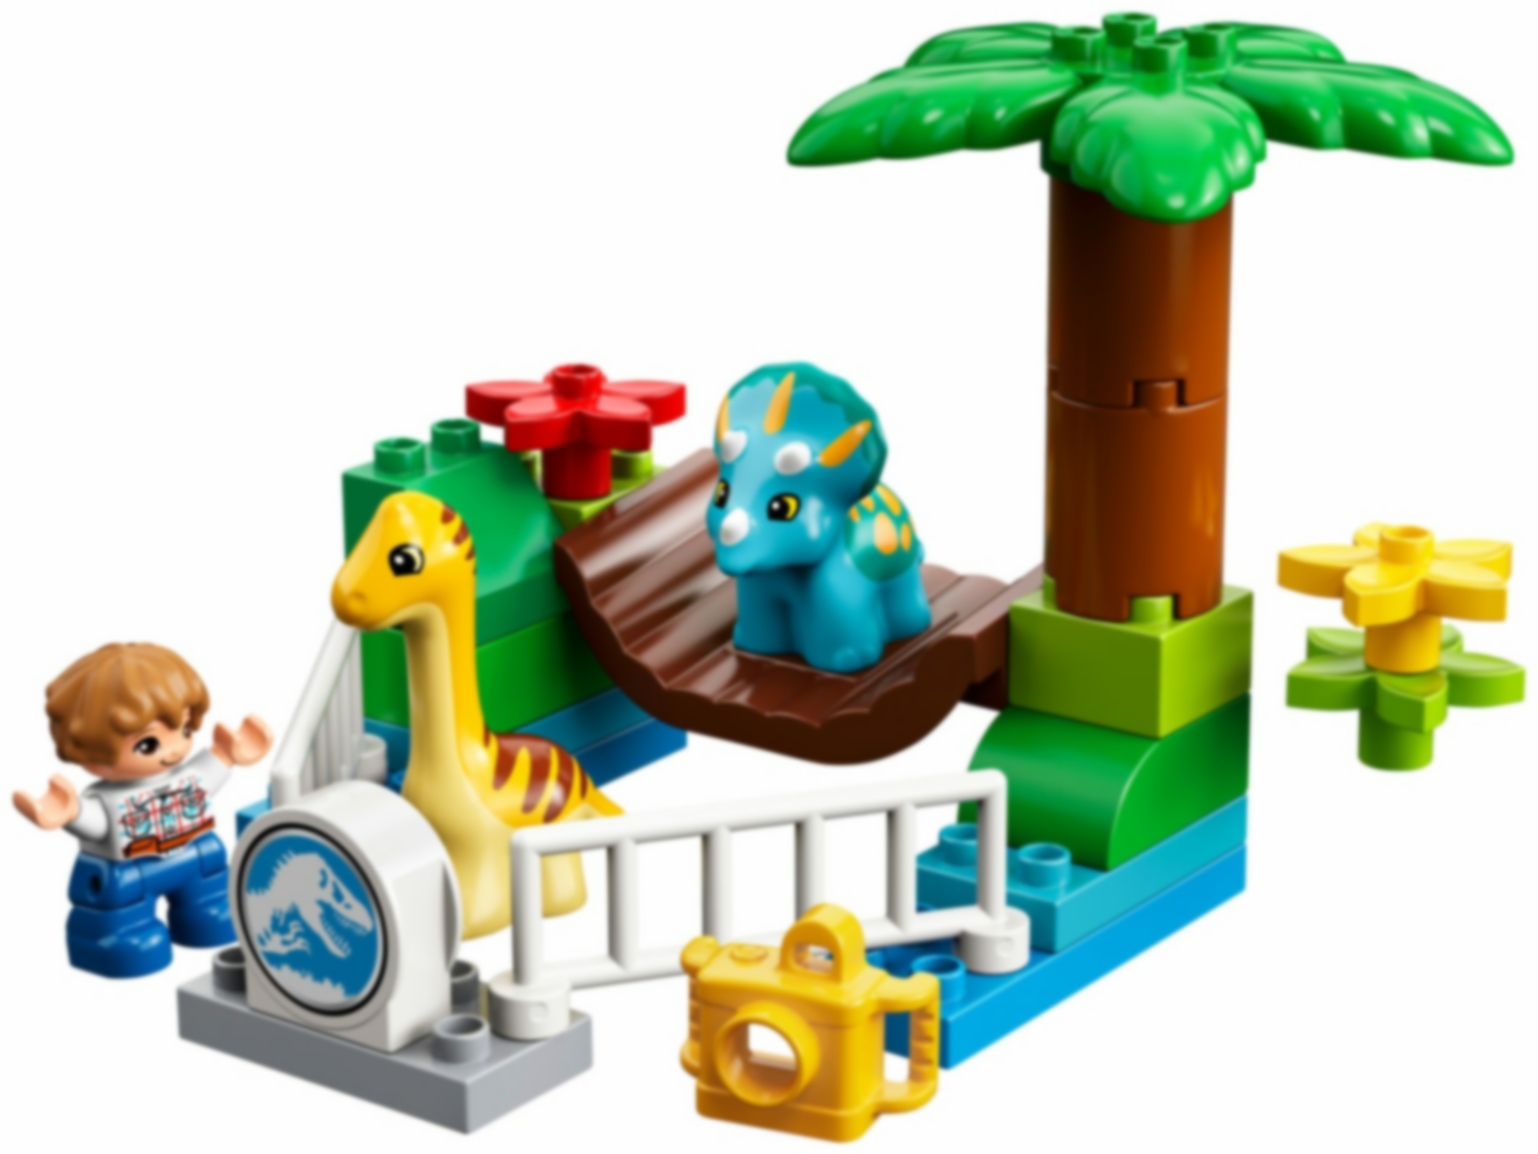 LEGO® DUPLO® Gentle Giants Petting Zoo components